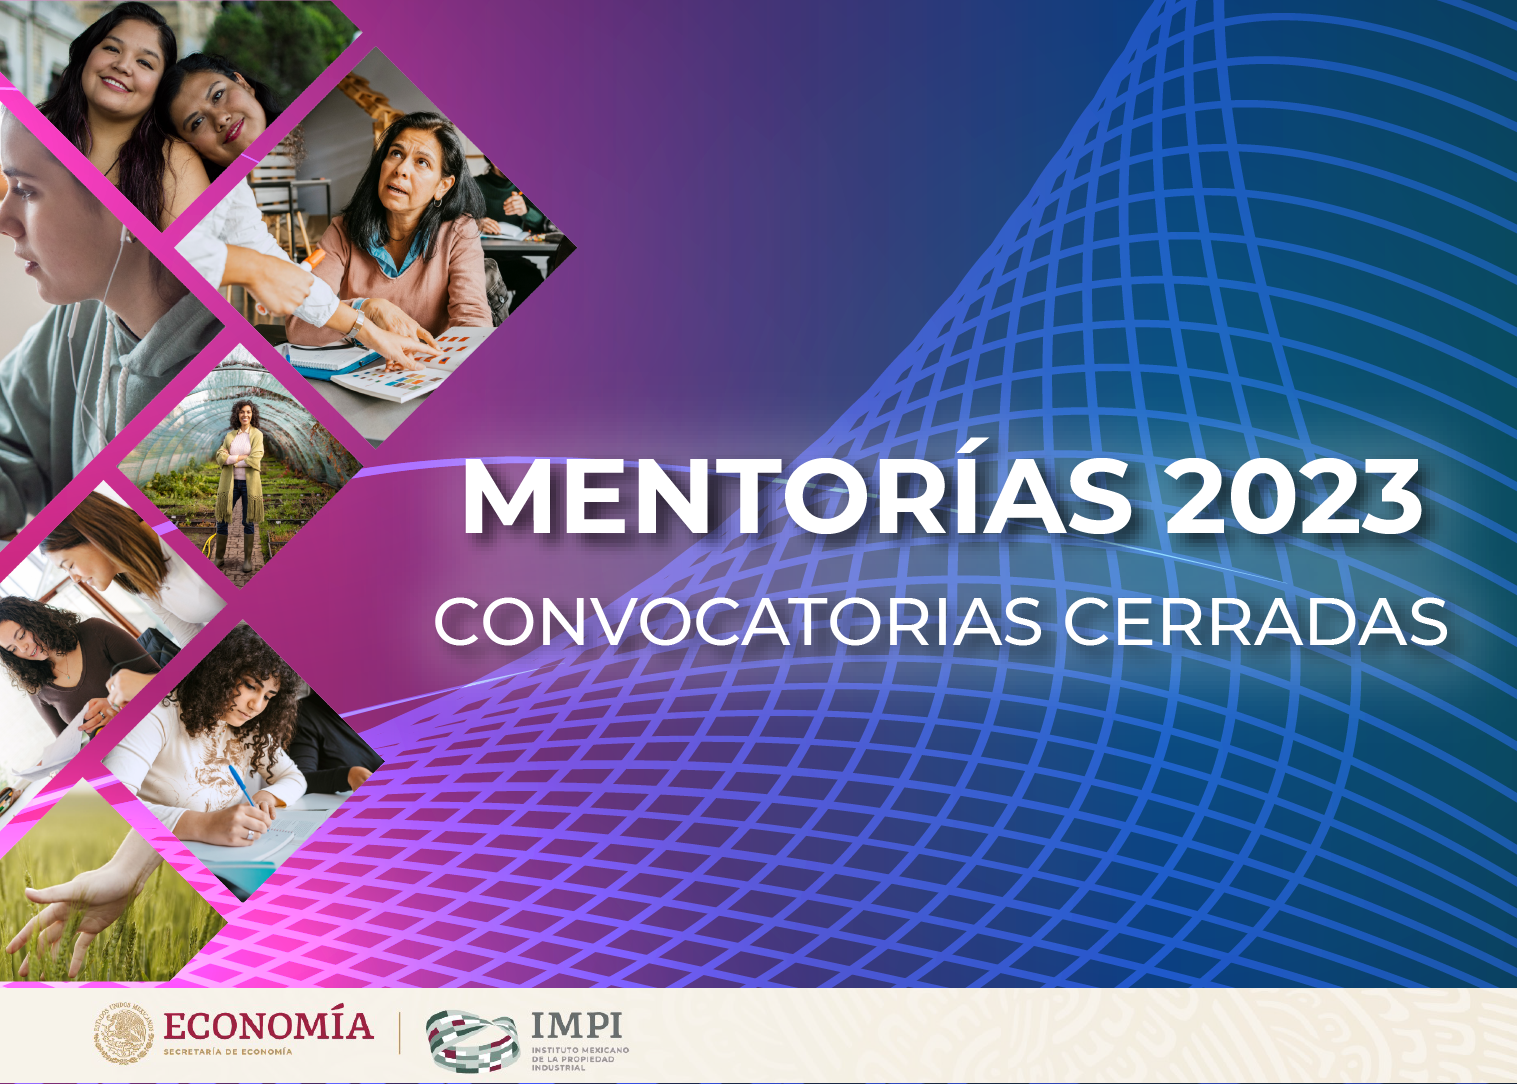 IMPI mentorias 2023 convocatoria